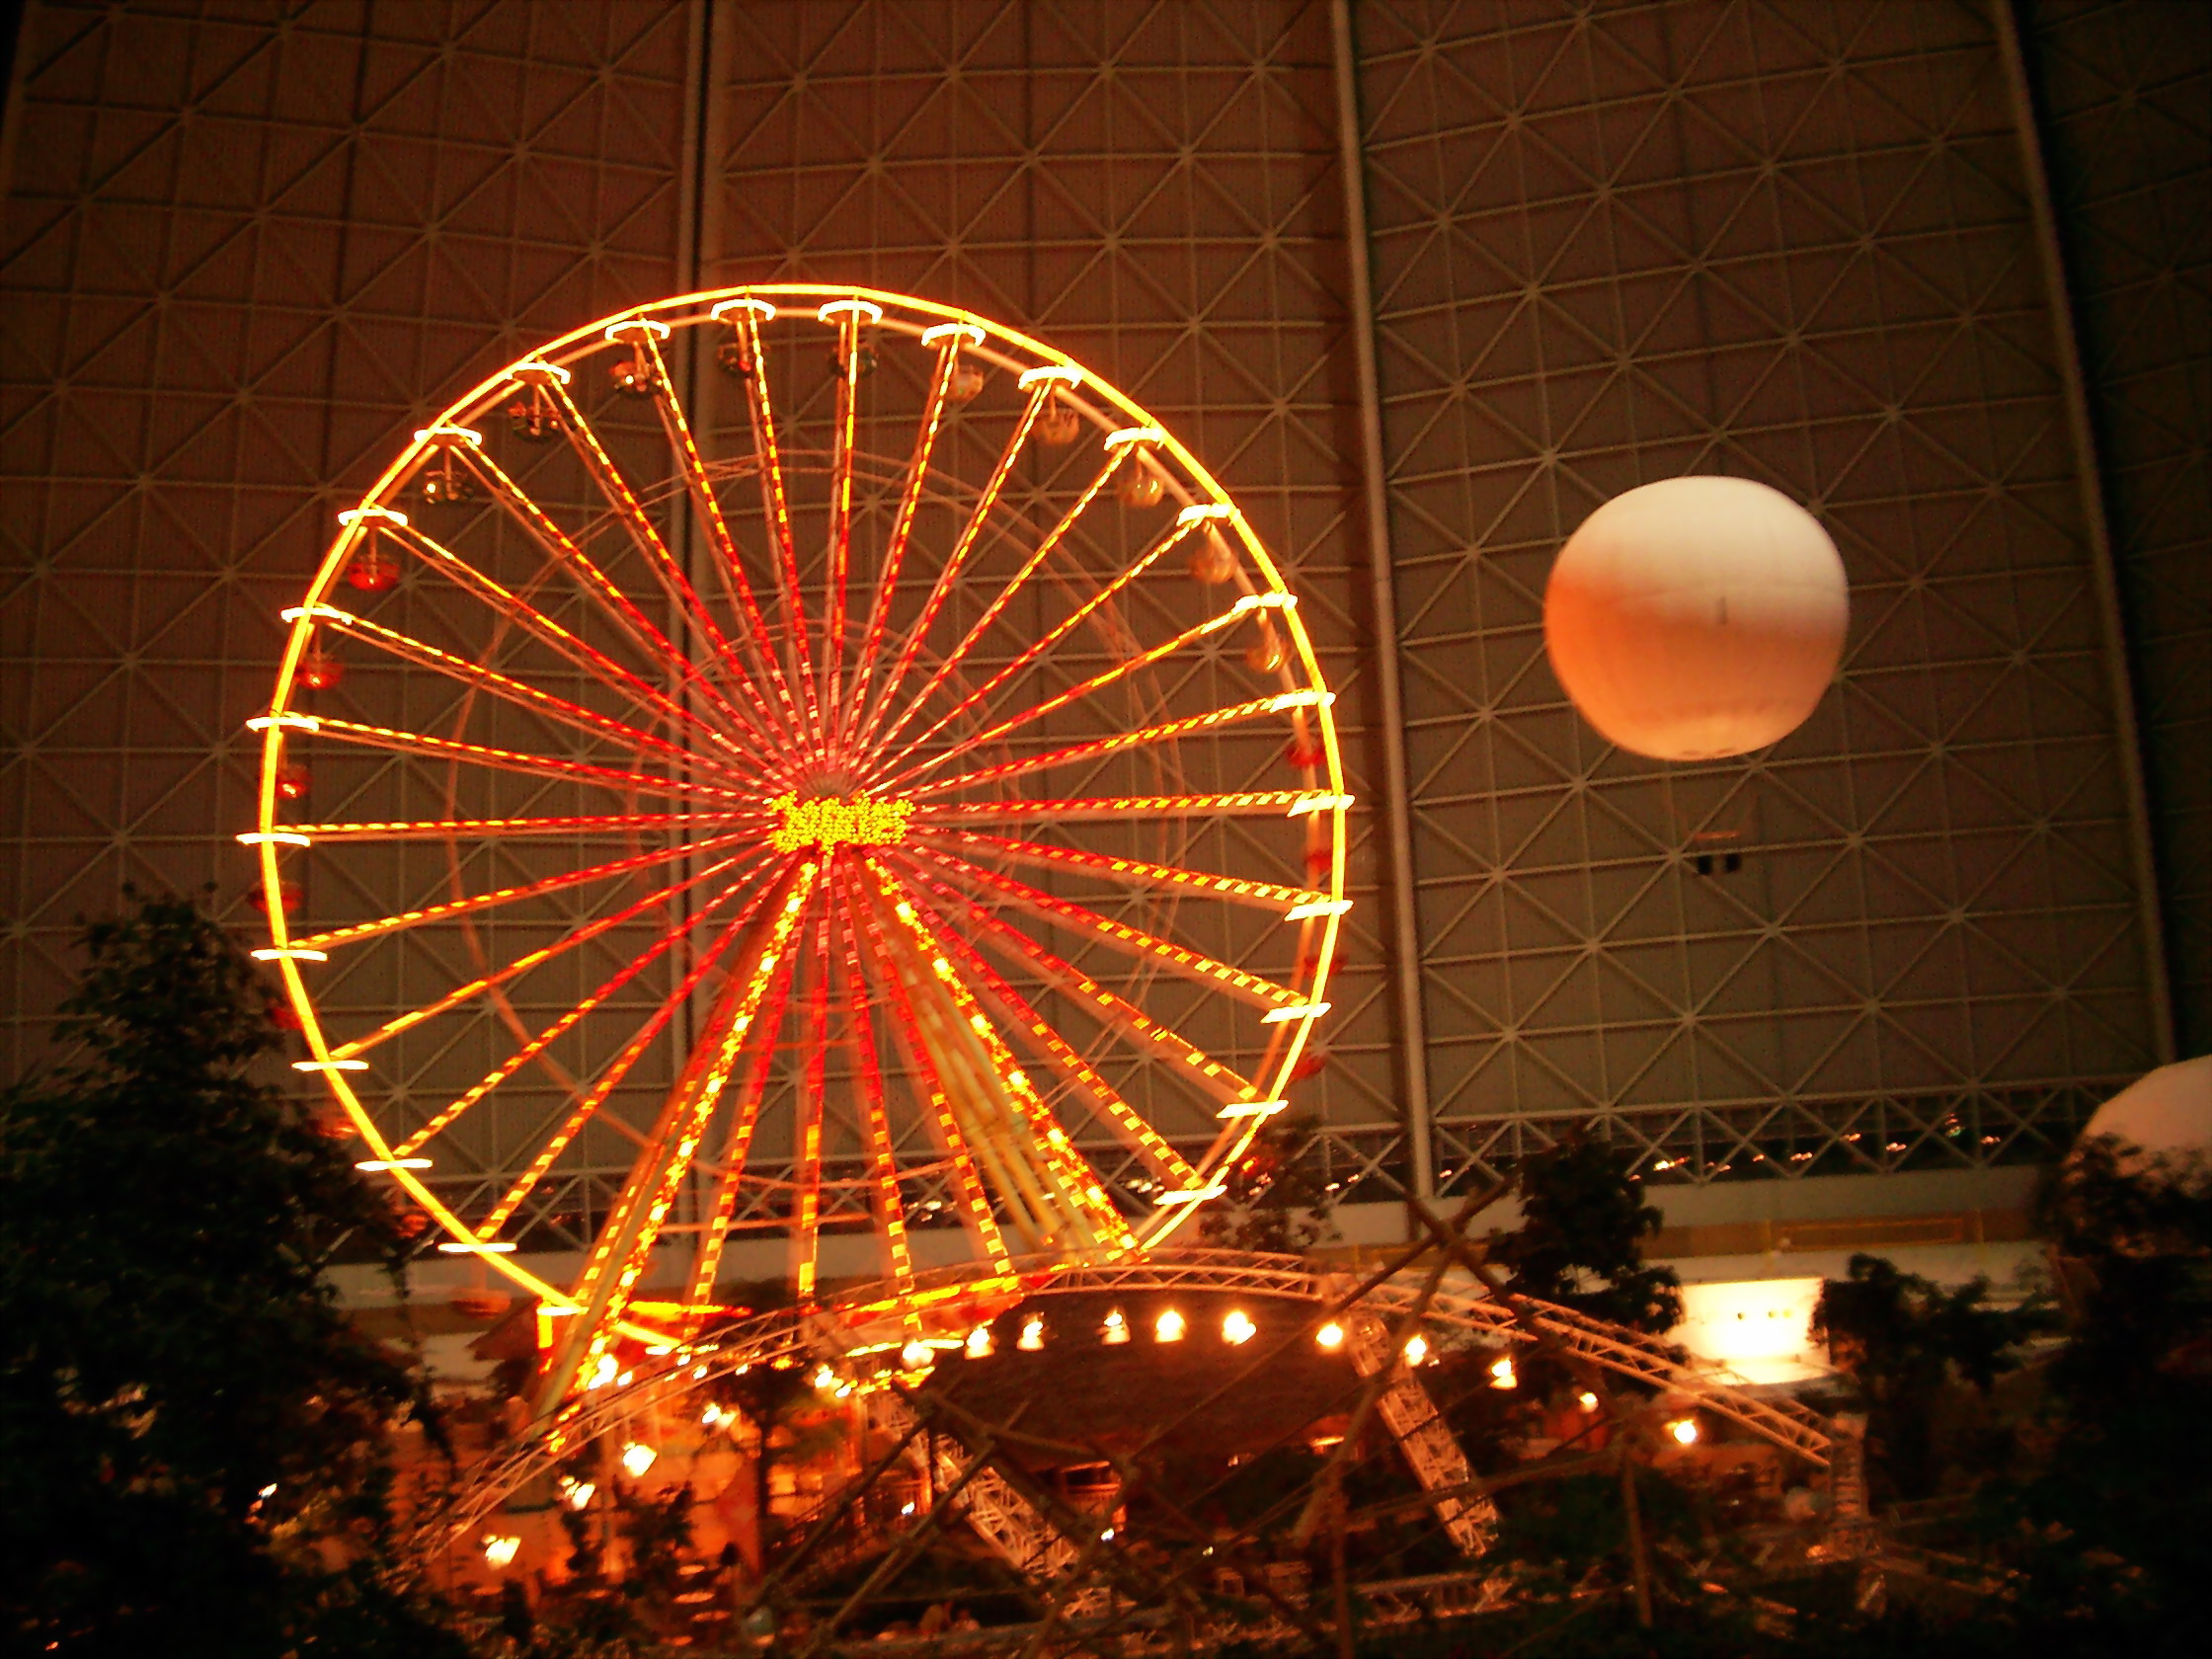 Das Riesenrad und der Ballon bei Nacht